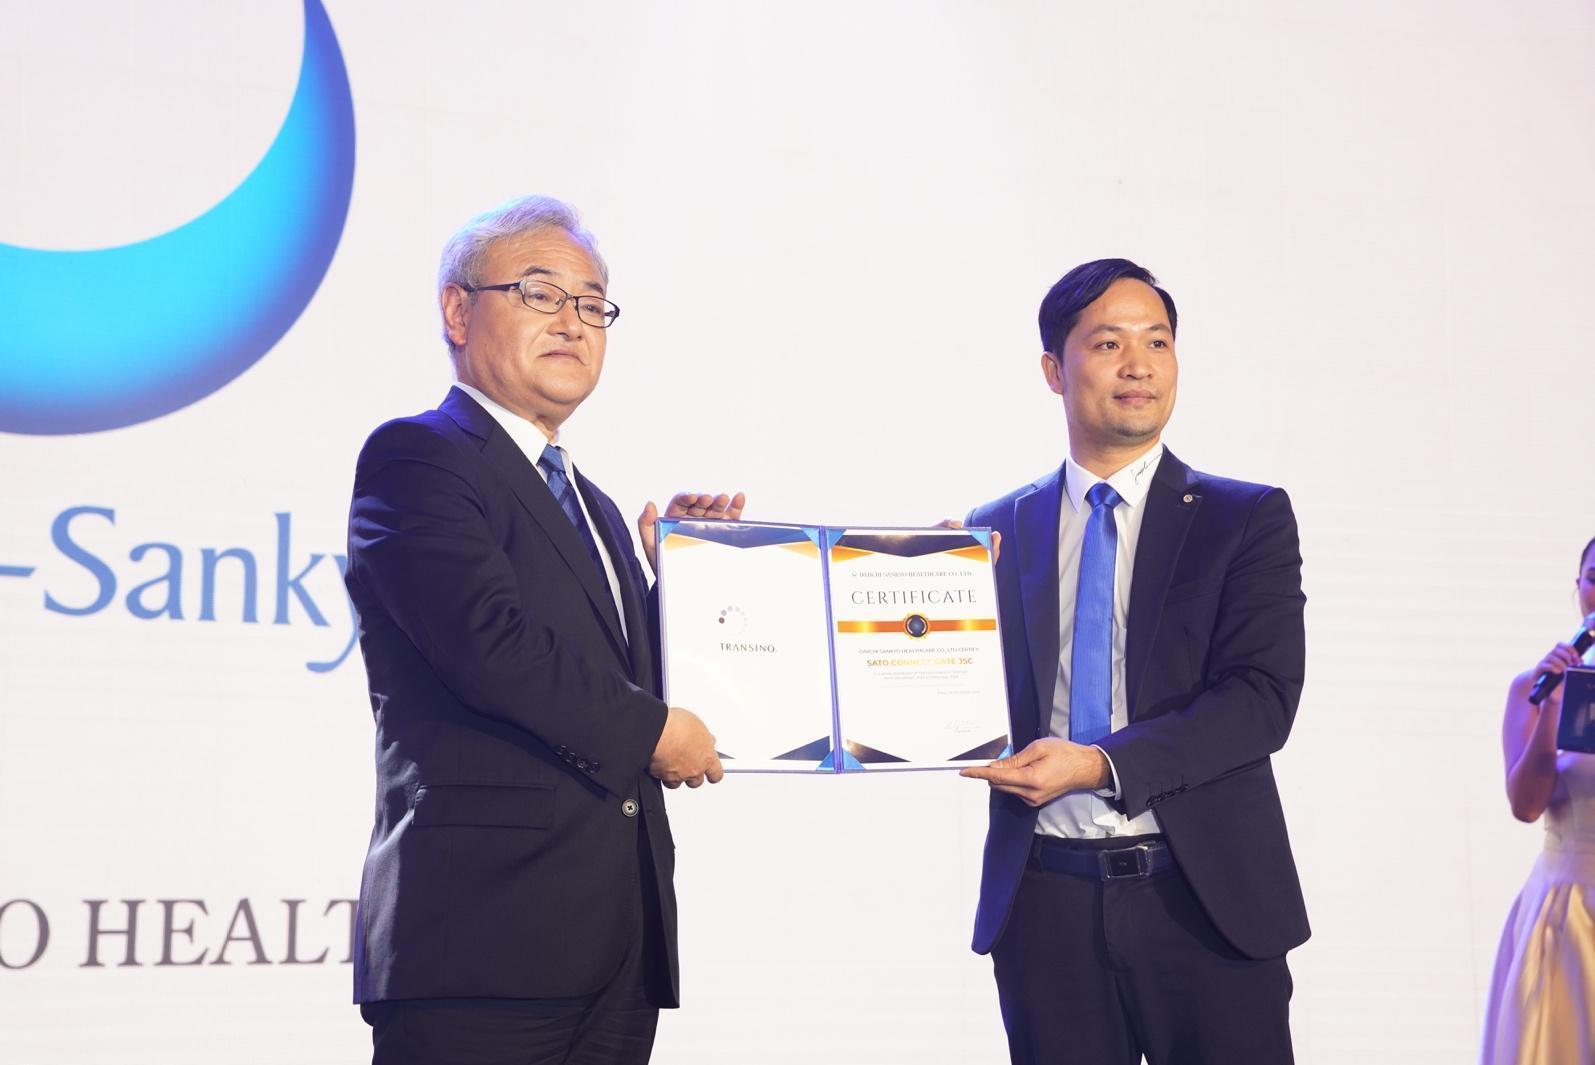 TRANSINO - Siêu phẩm dưỡng da trắng sáng nổi tiếng Nhật Bản chính thức có mặt tại Việt Nam - 3